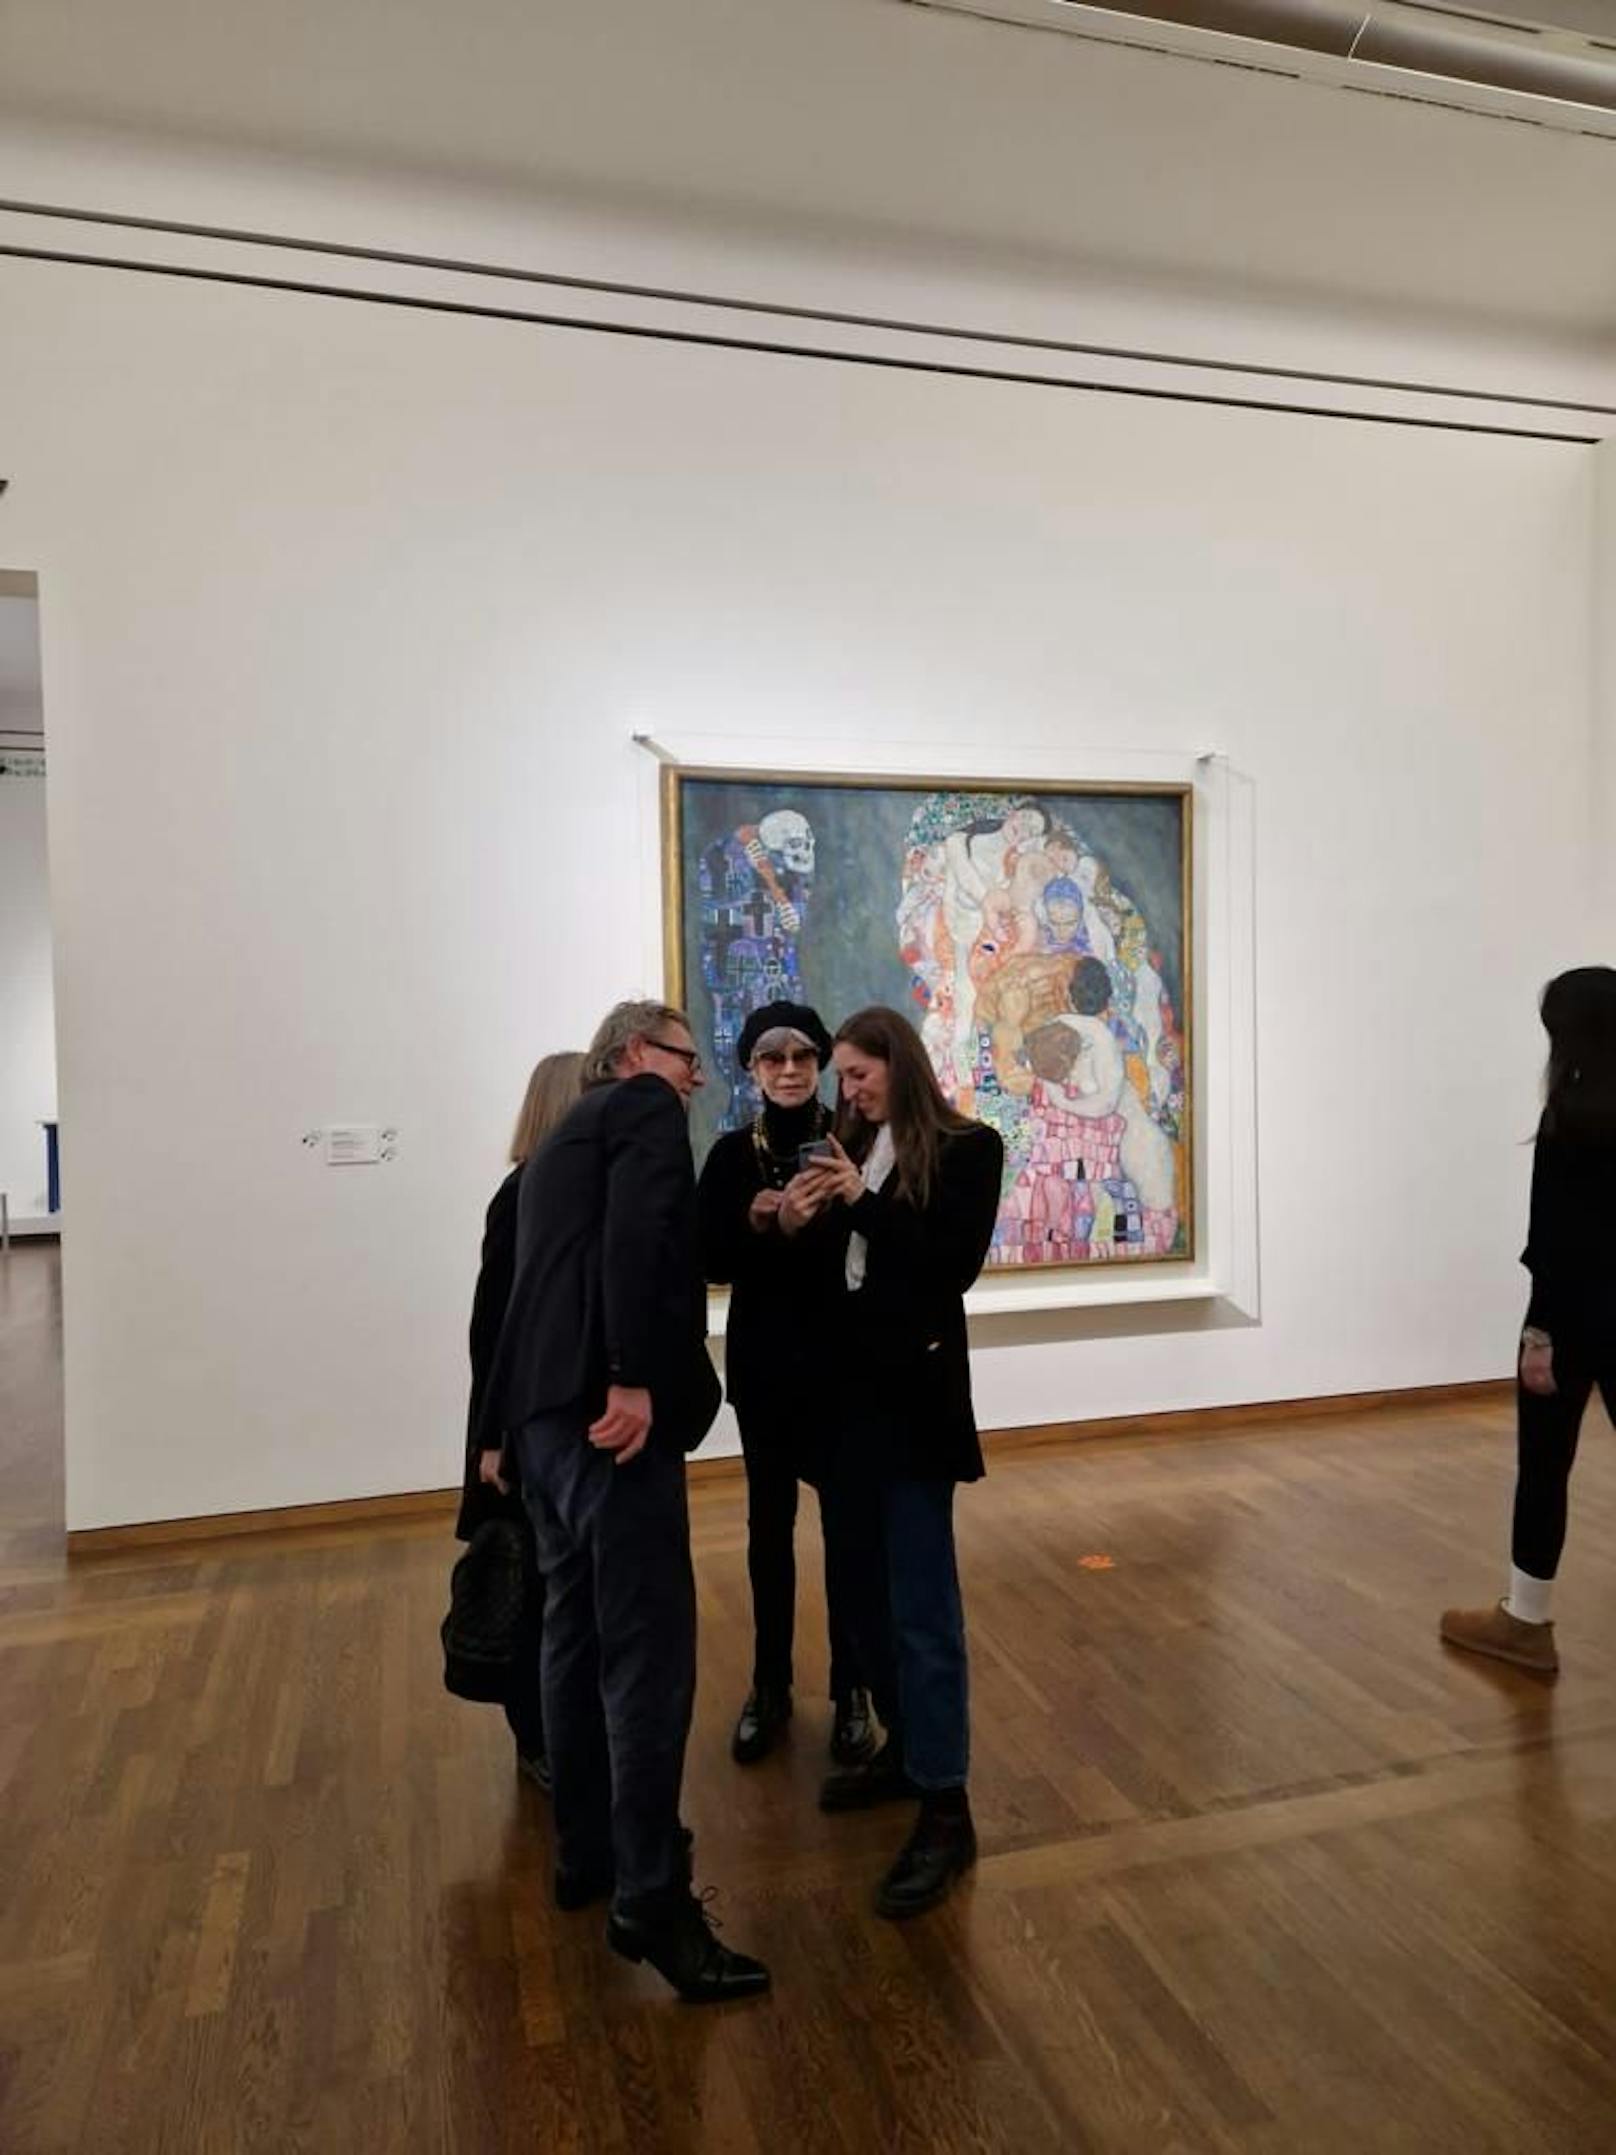 Bei dem Gemälde handelt es sich um "Tod und Leben" von Gustav Klimt.